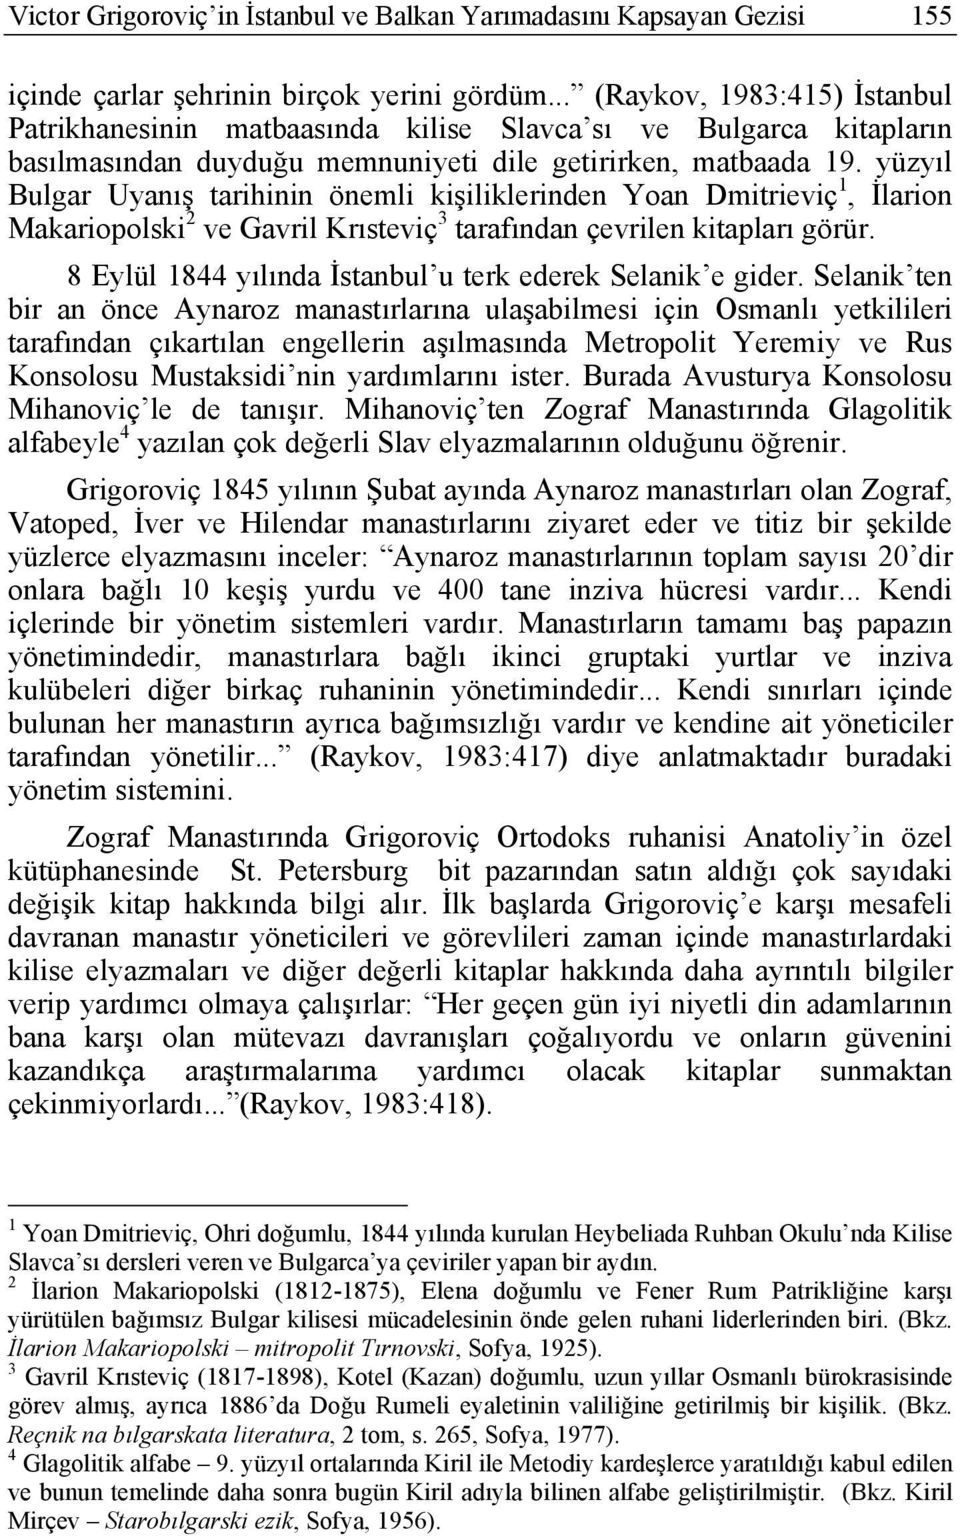 yüzyıl Bulgar Uyanış tarihinin önemli kişiliklerinden Yoan Dmitrieviç 1, İlarion Makariopolski 2 ve Gavril Krısteviç 3 tarafından çevrilen kitapları görür.